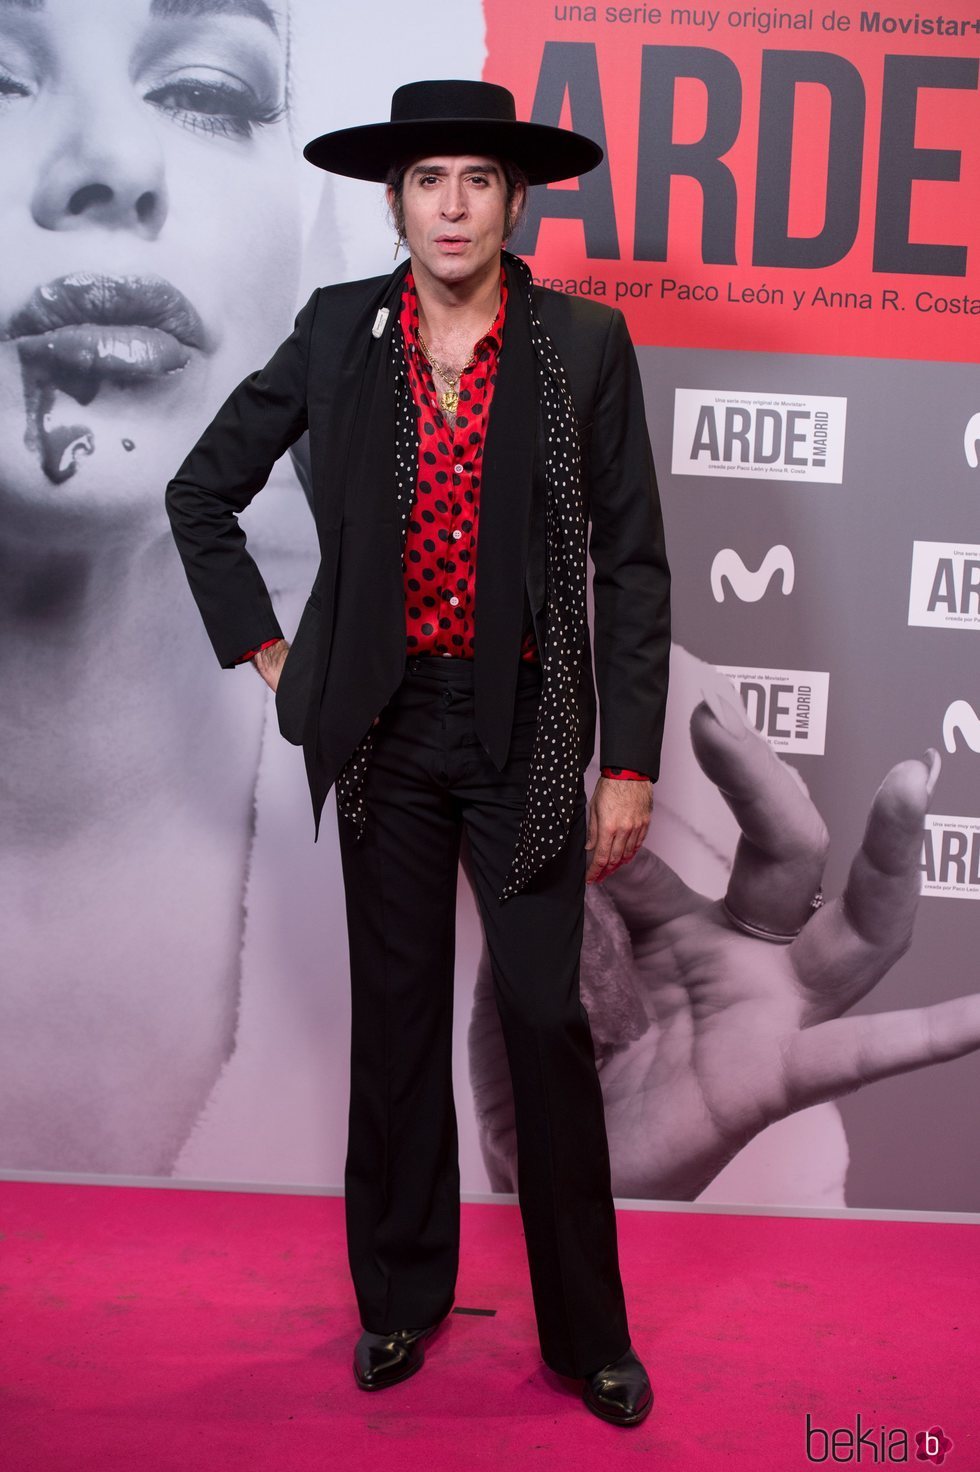 Mario Vaquerizo en el estreno de 'Arde Madrid'